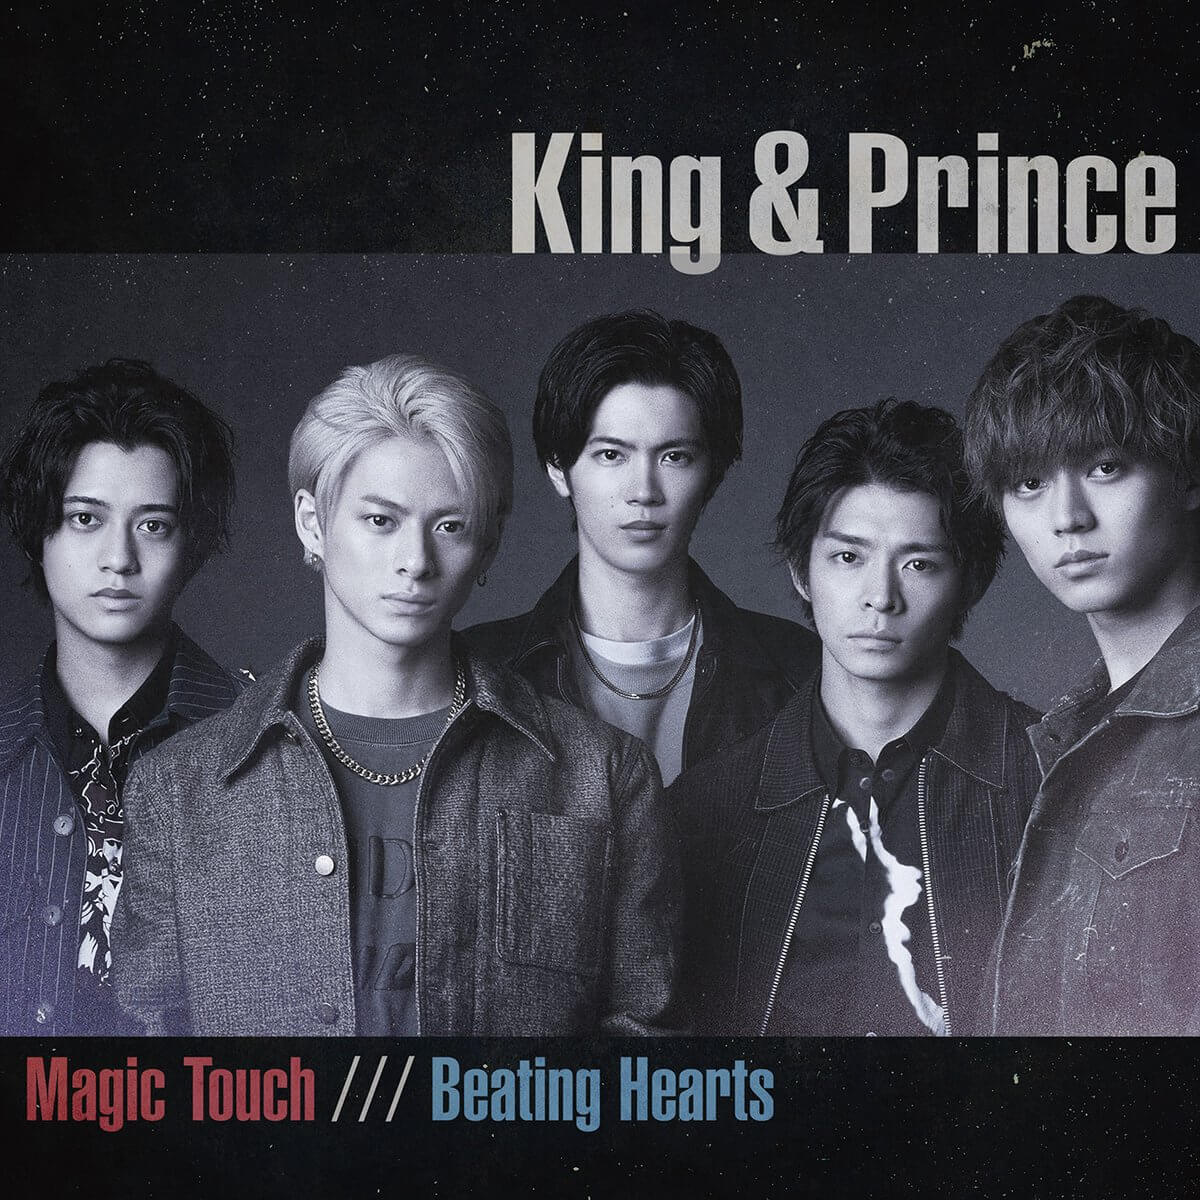 King & Prince - King&Prince 1stアルバム Bのみの